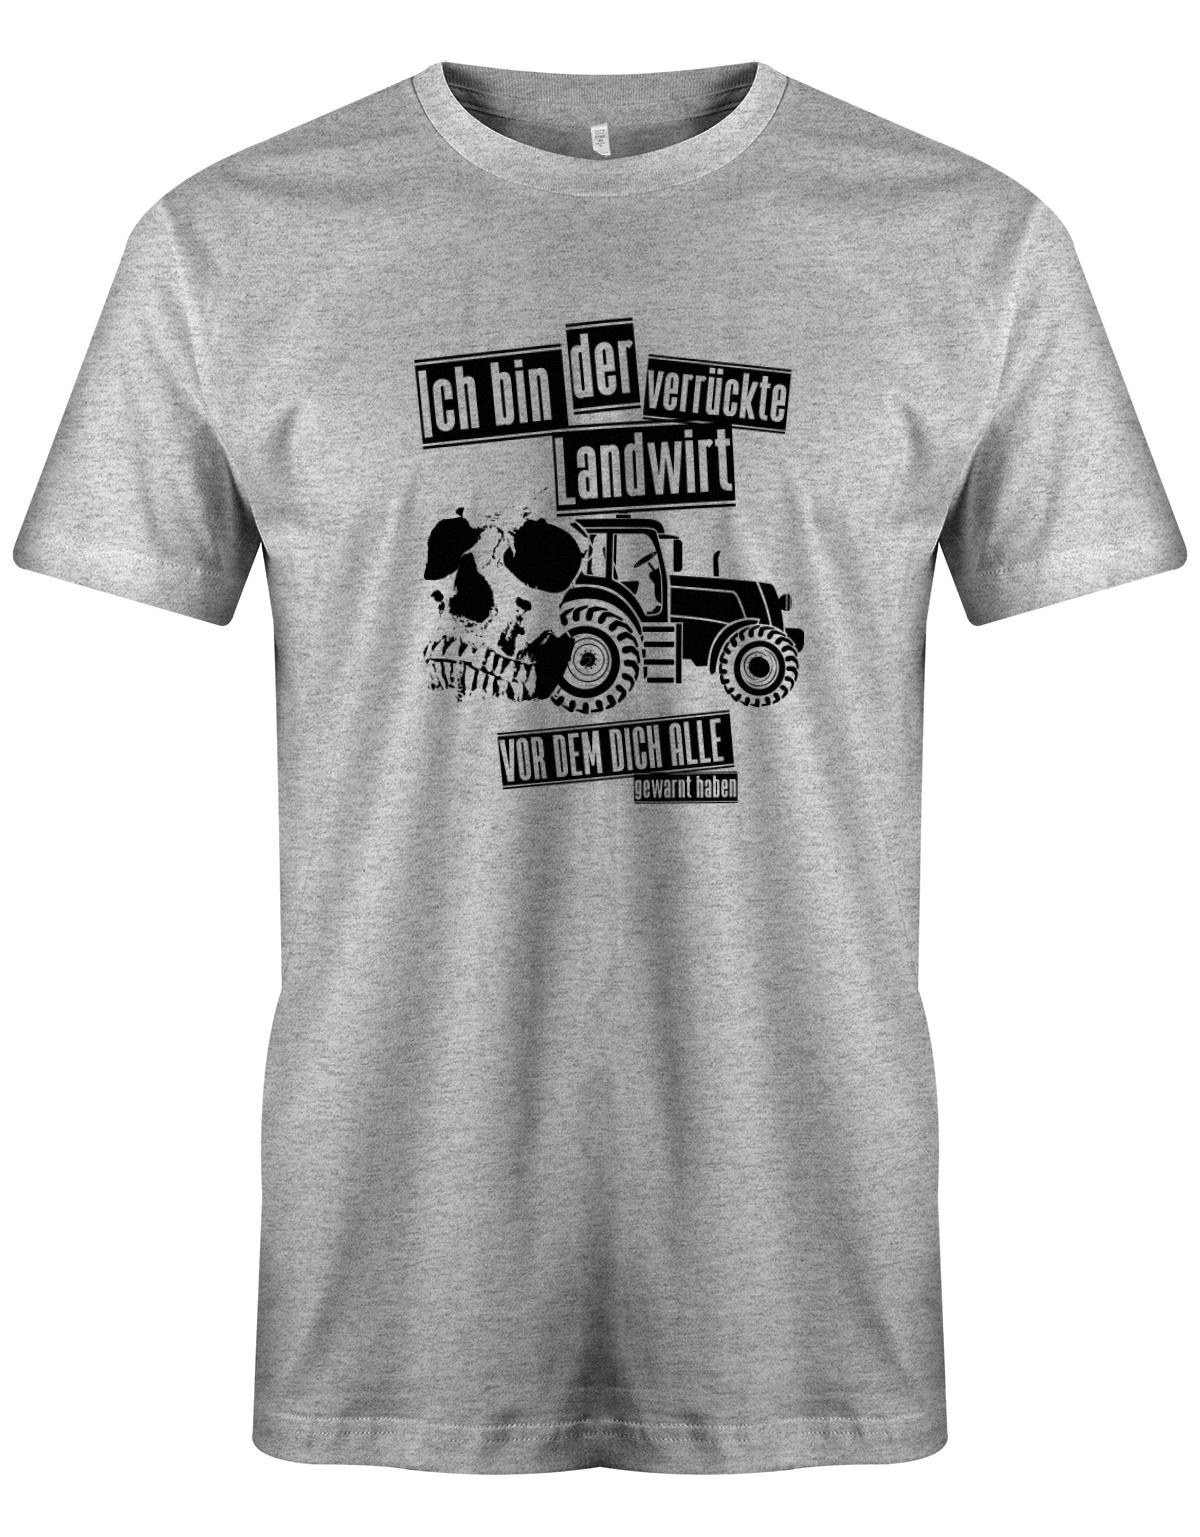 Landwirtschaft Shirt Männer - Ich bin der verrückte Landwirt vor dem dich alle gewarnt haben. Grau